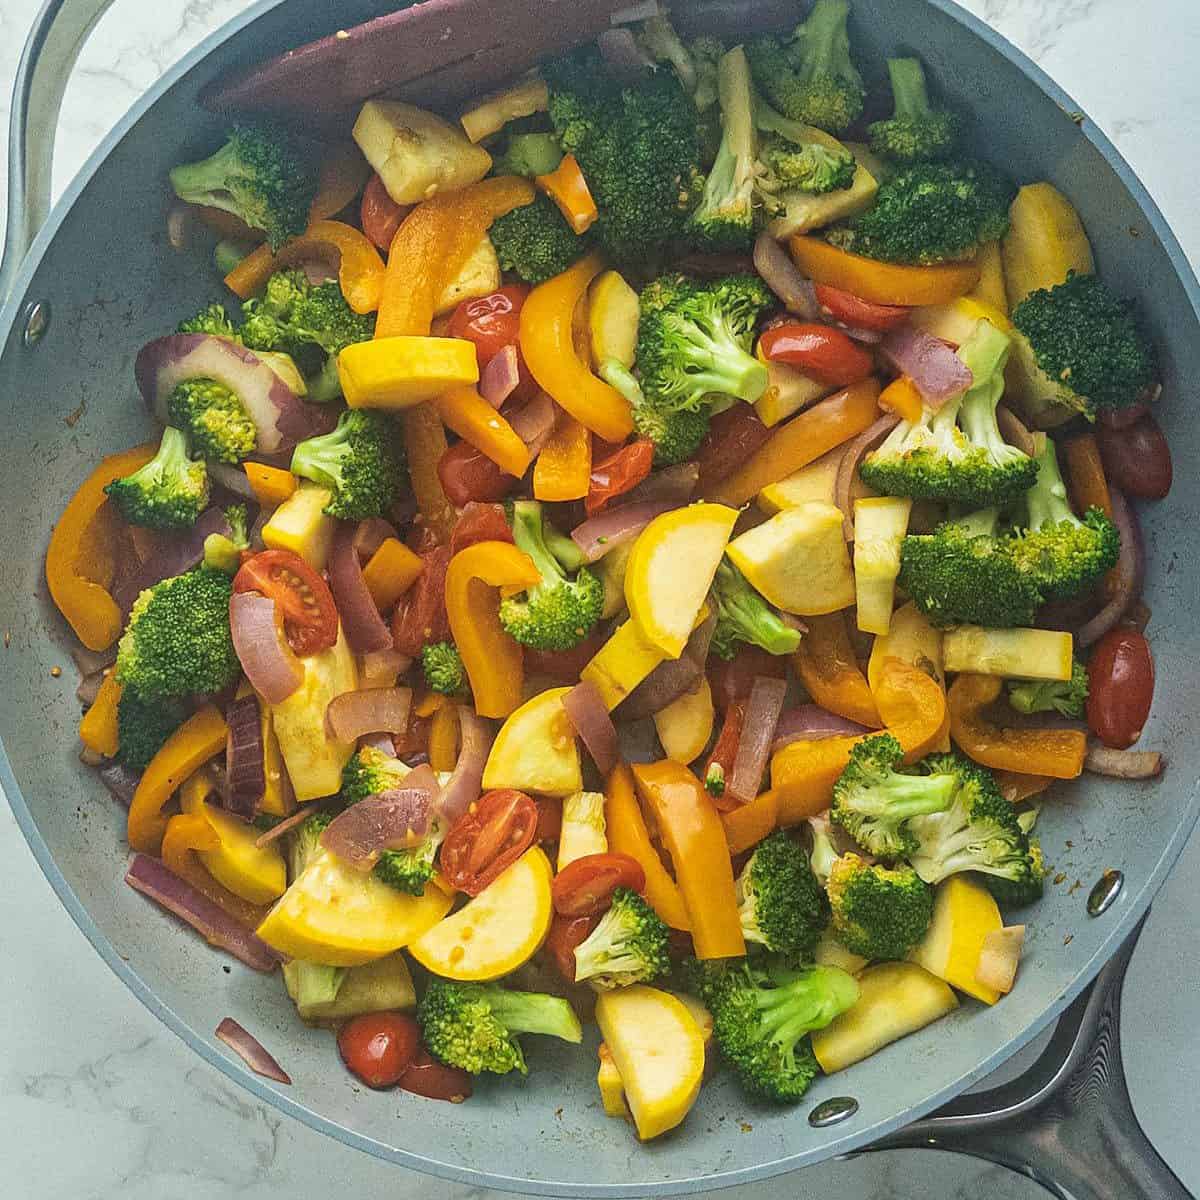 Sauteed veggies in a frying pan